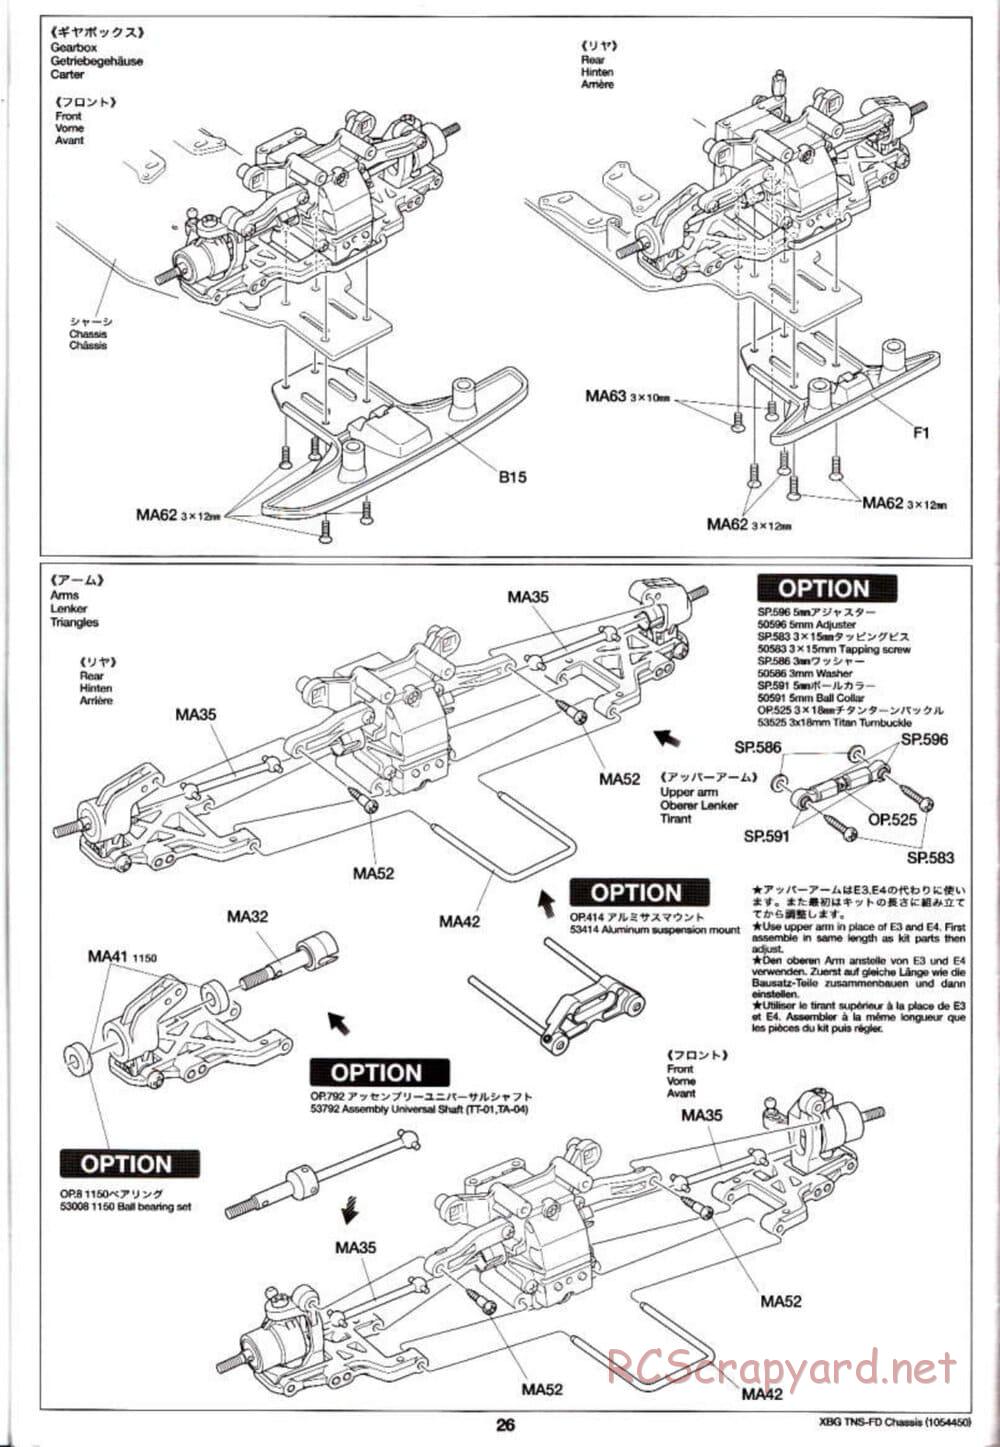 Tamiya - TNS-FD Chassis - Manual - Page 26